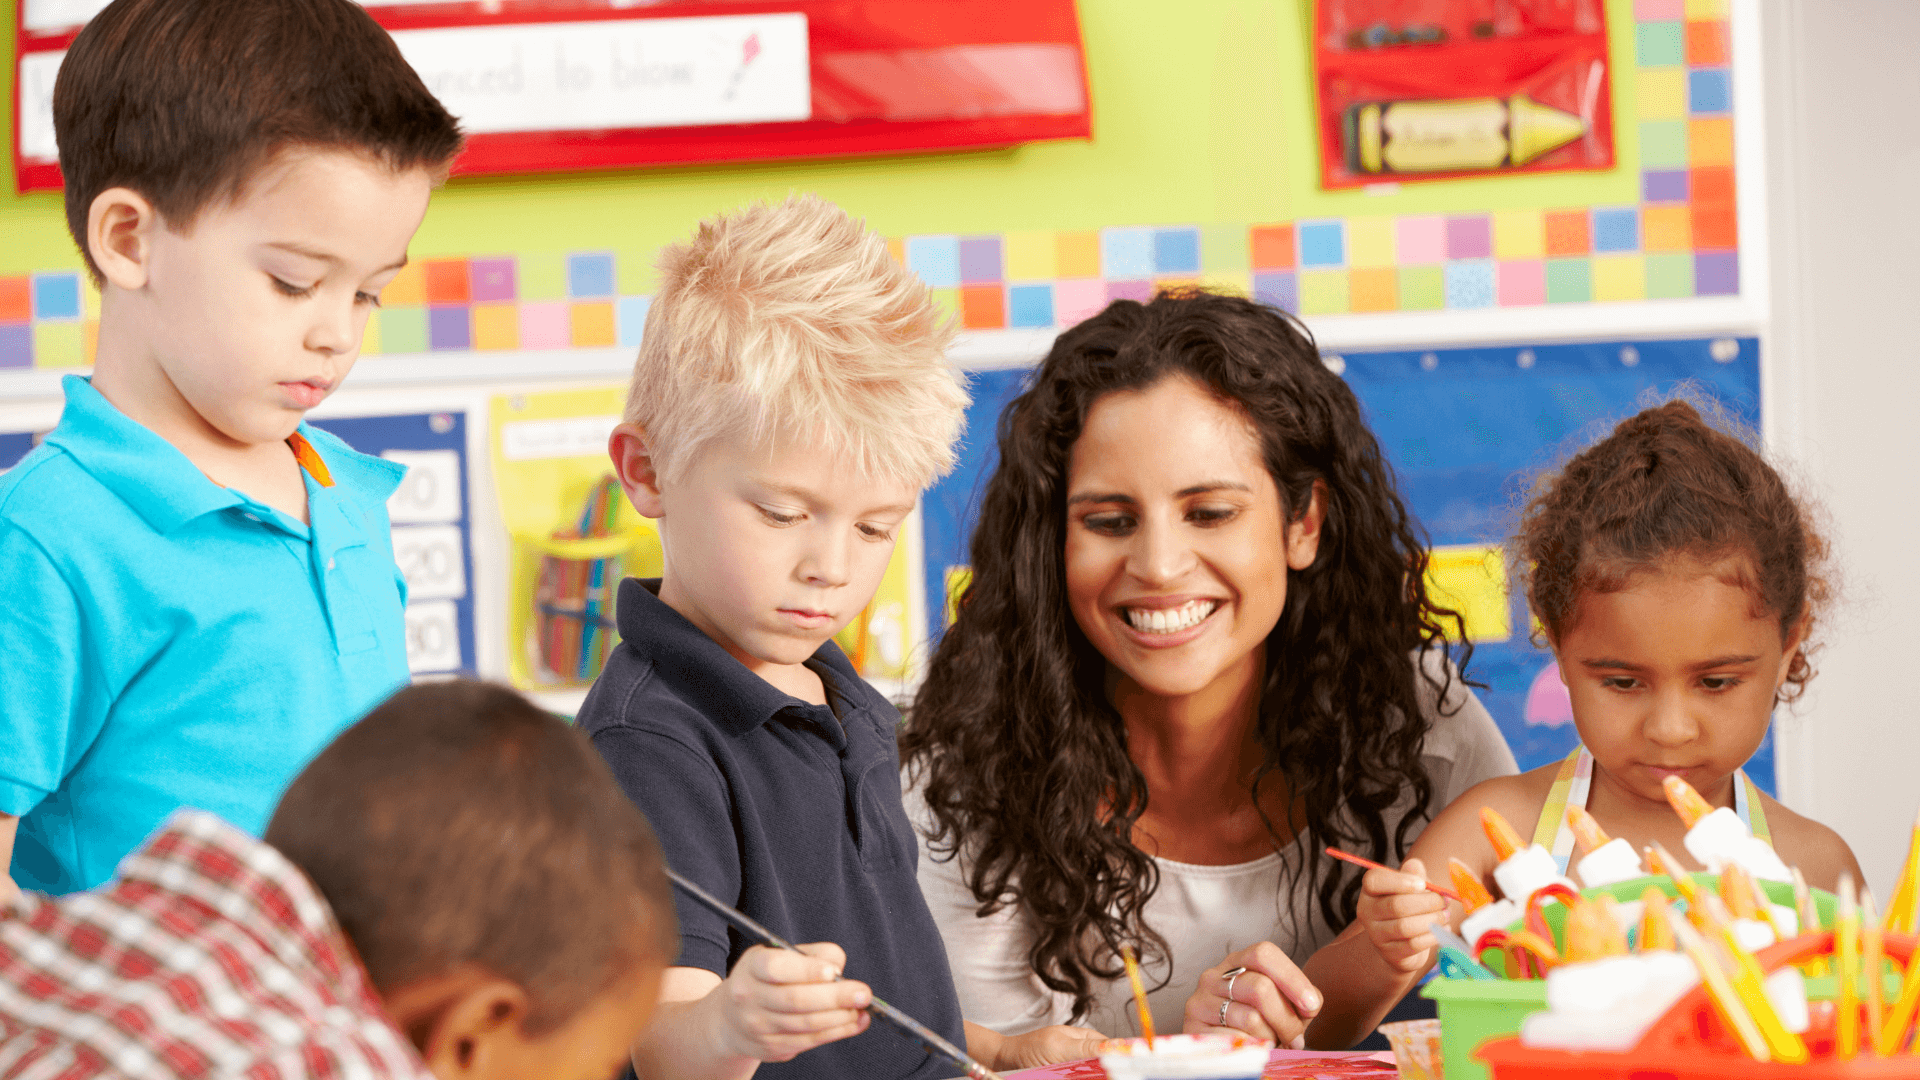 تكييف التدريس مع أساليب التعلم المختلفة كإحدى استراتيجيات إدارة الفصل الدراسي للمعلمين الجدد